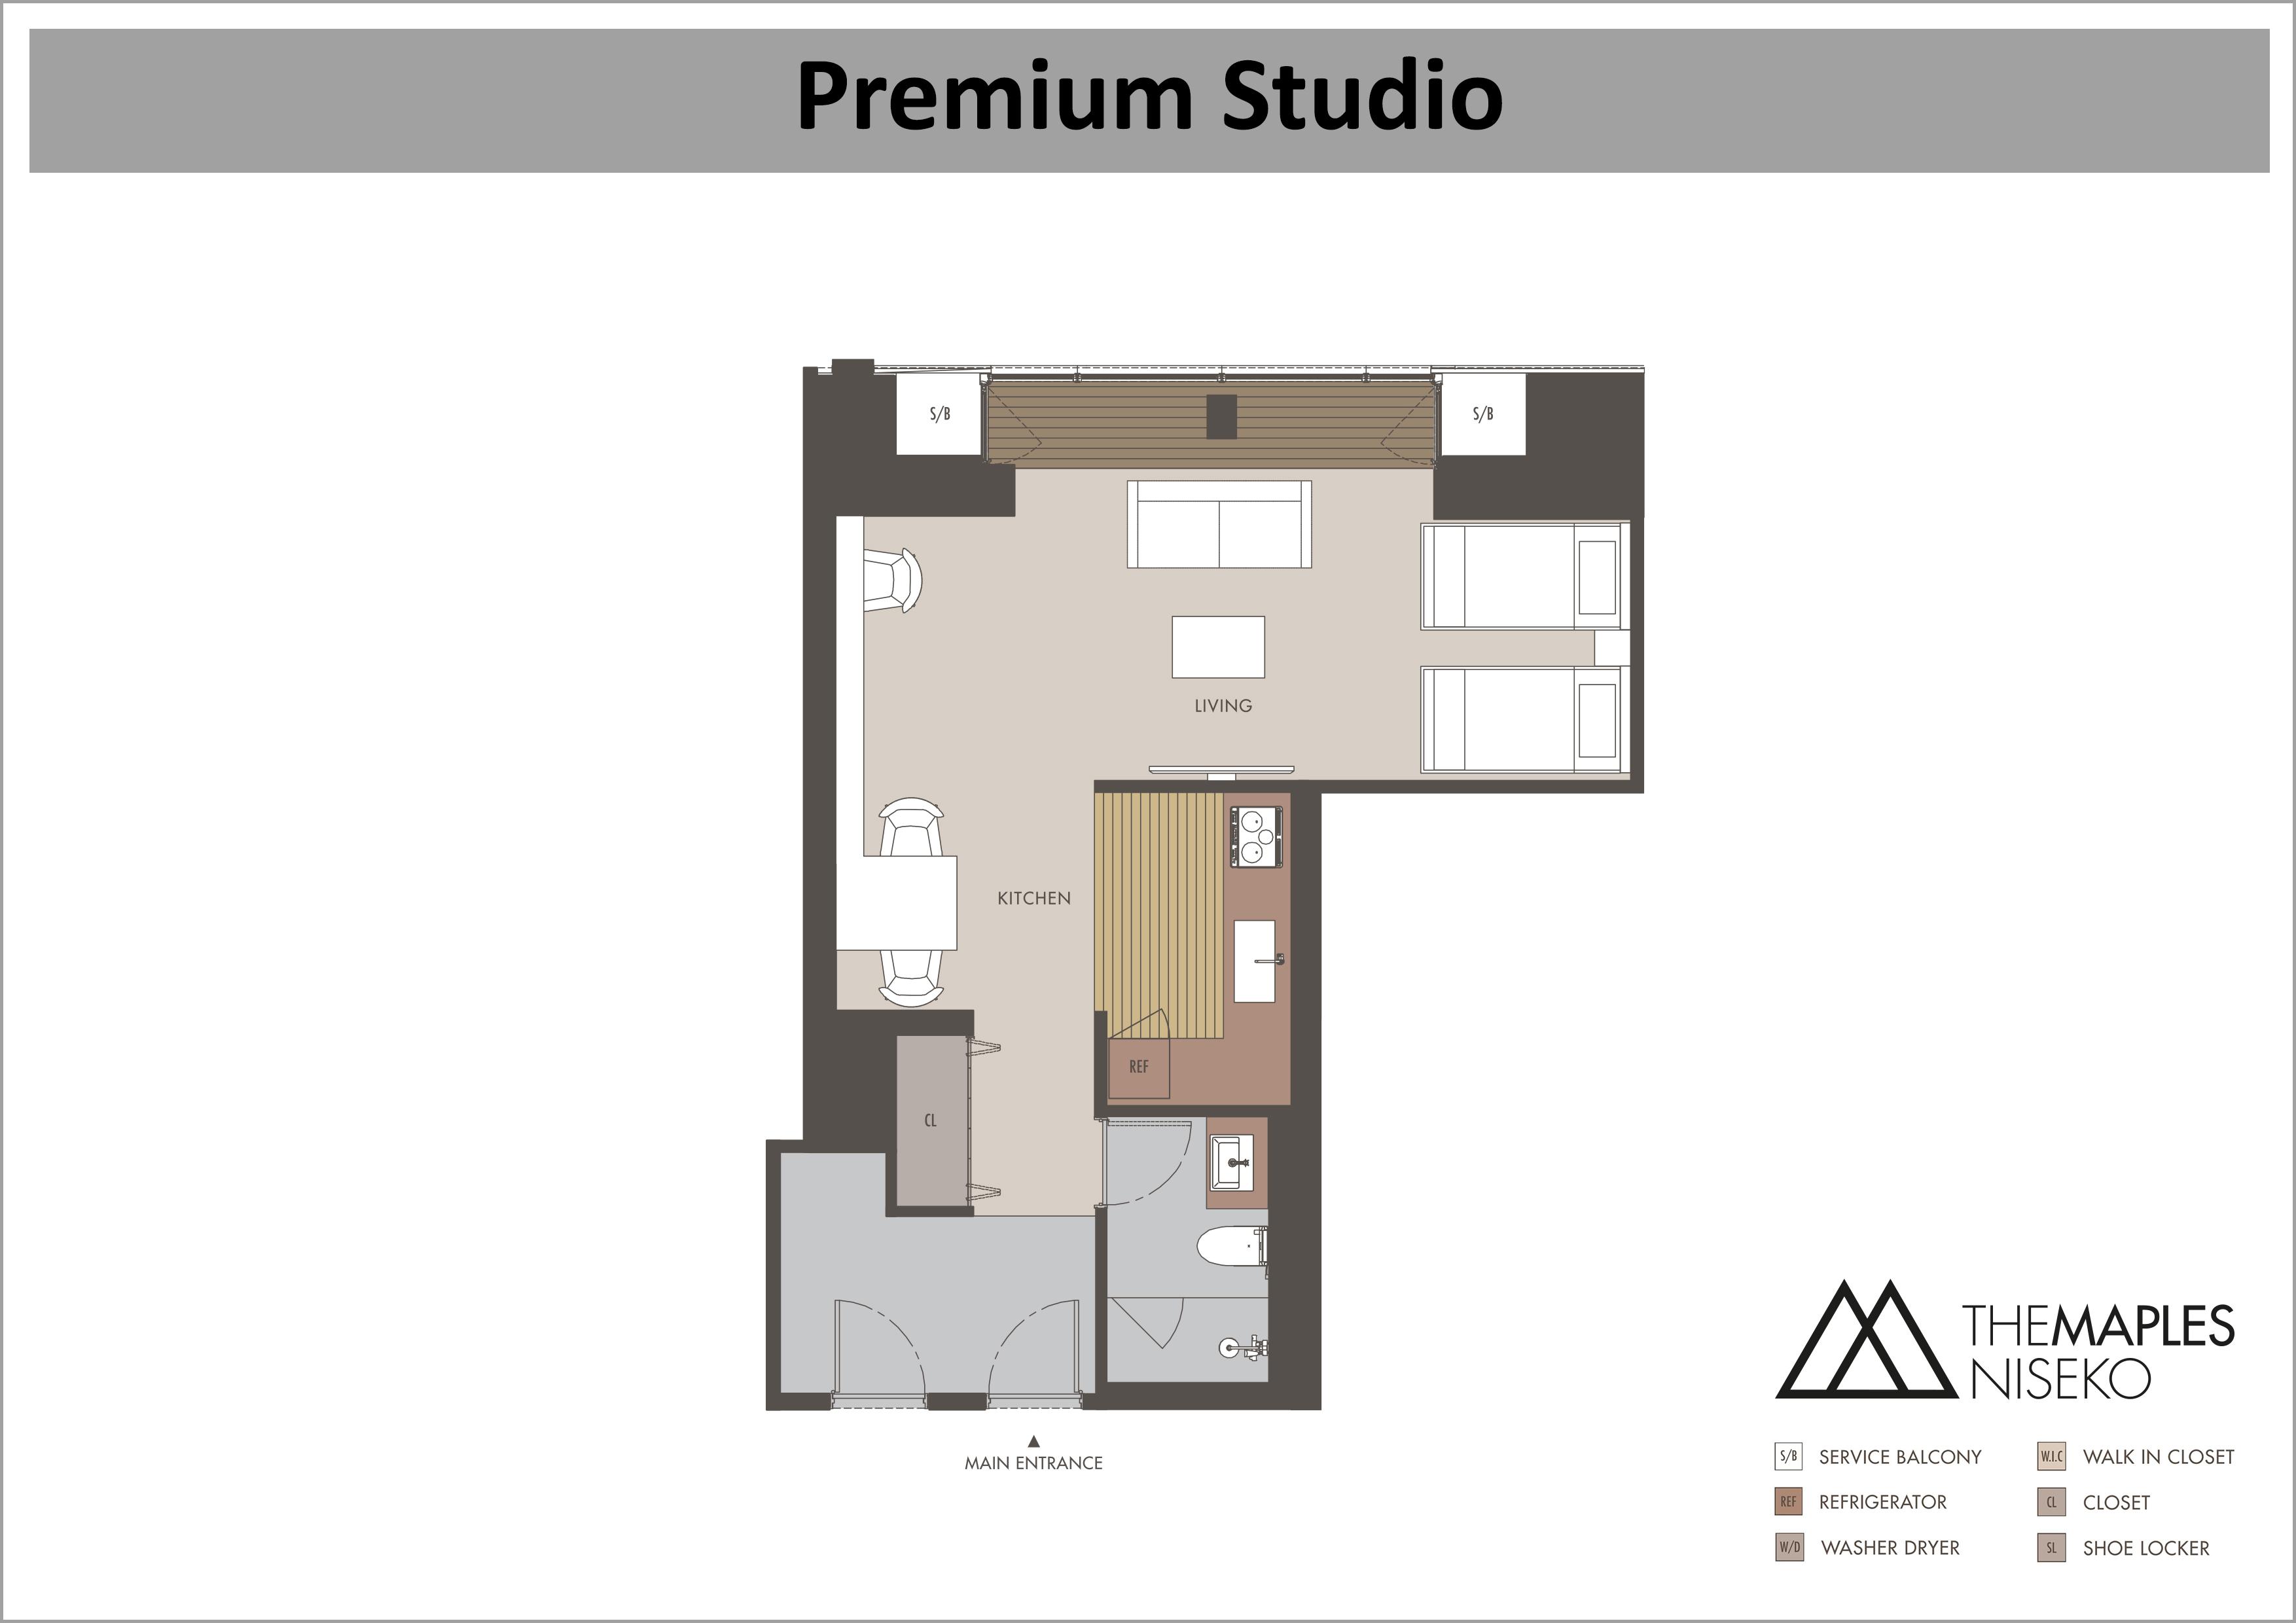 The Maples - Premium Studio floor plan